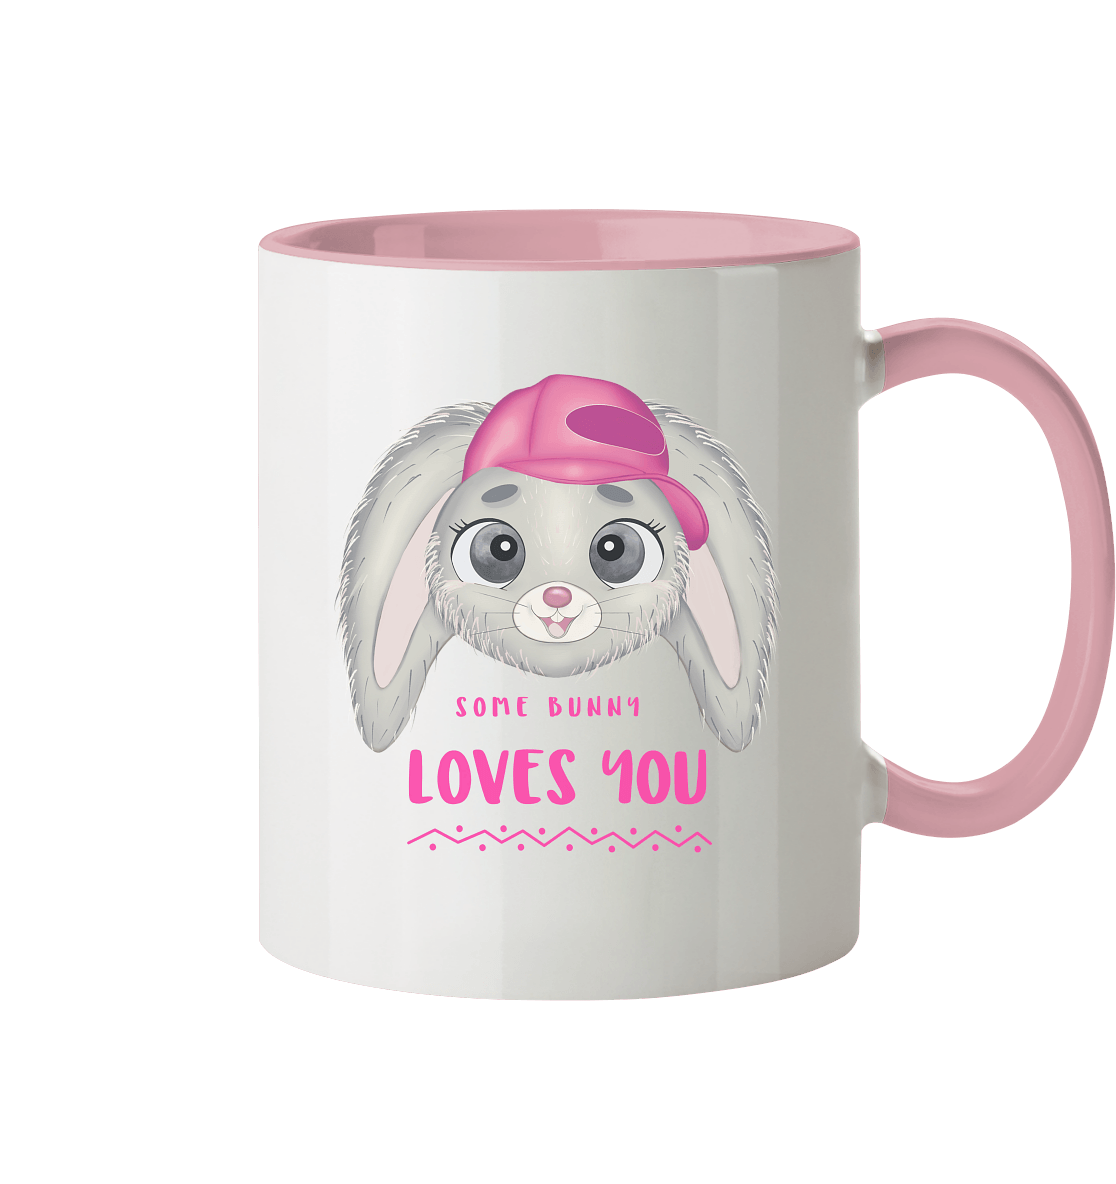 Zweifarbige Tasse mit handgezeichneten Hasen und Beschriftung "Some Bunny loves you." 